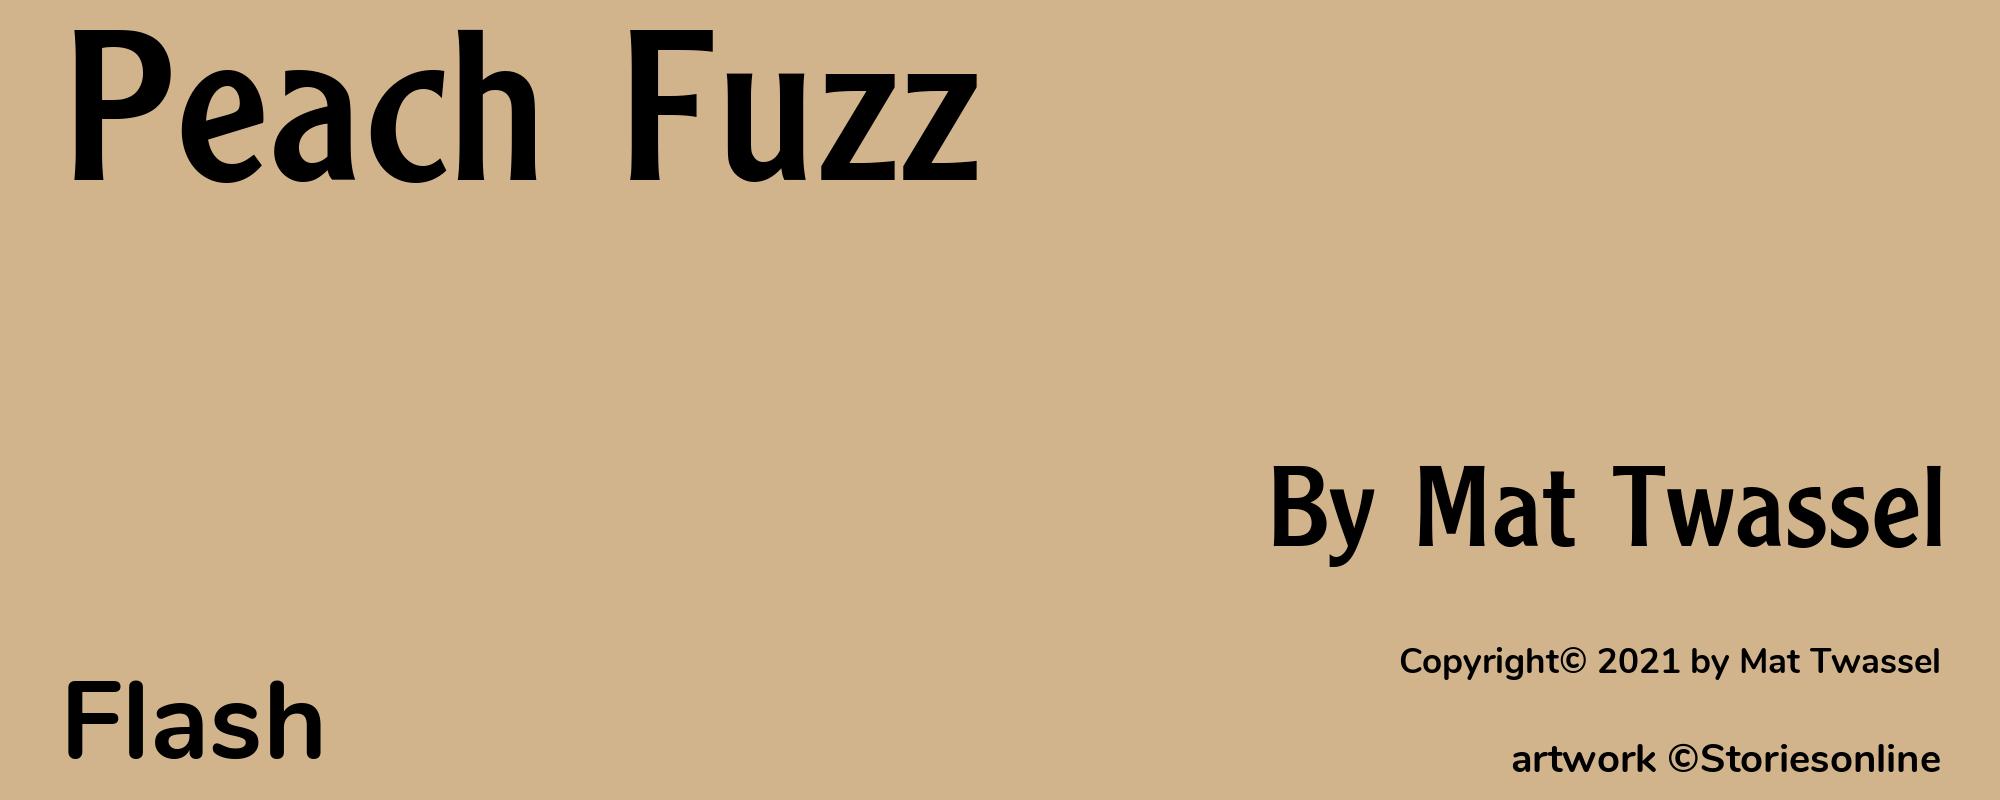 Peach Fuzz - Cover